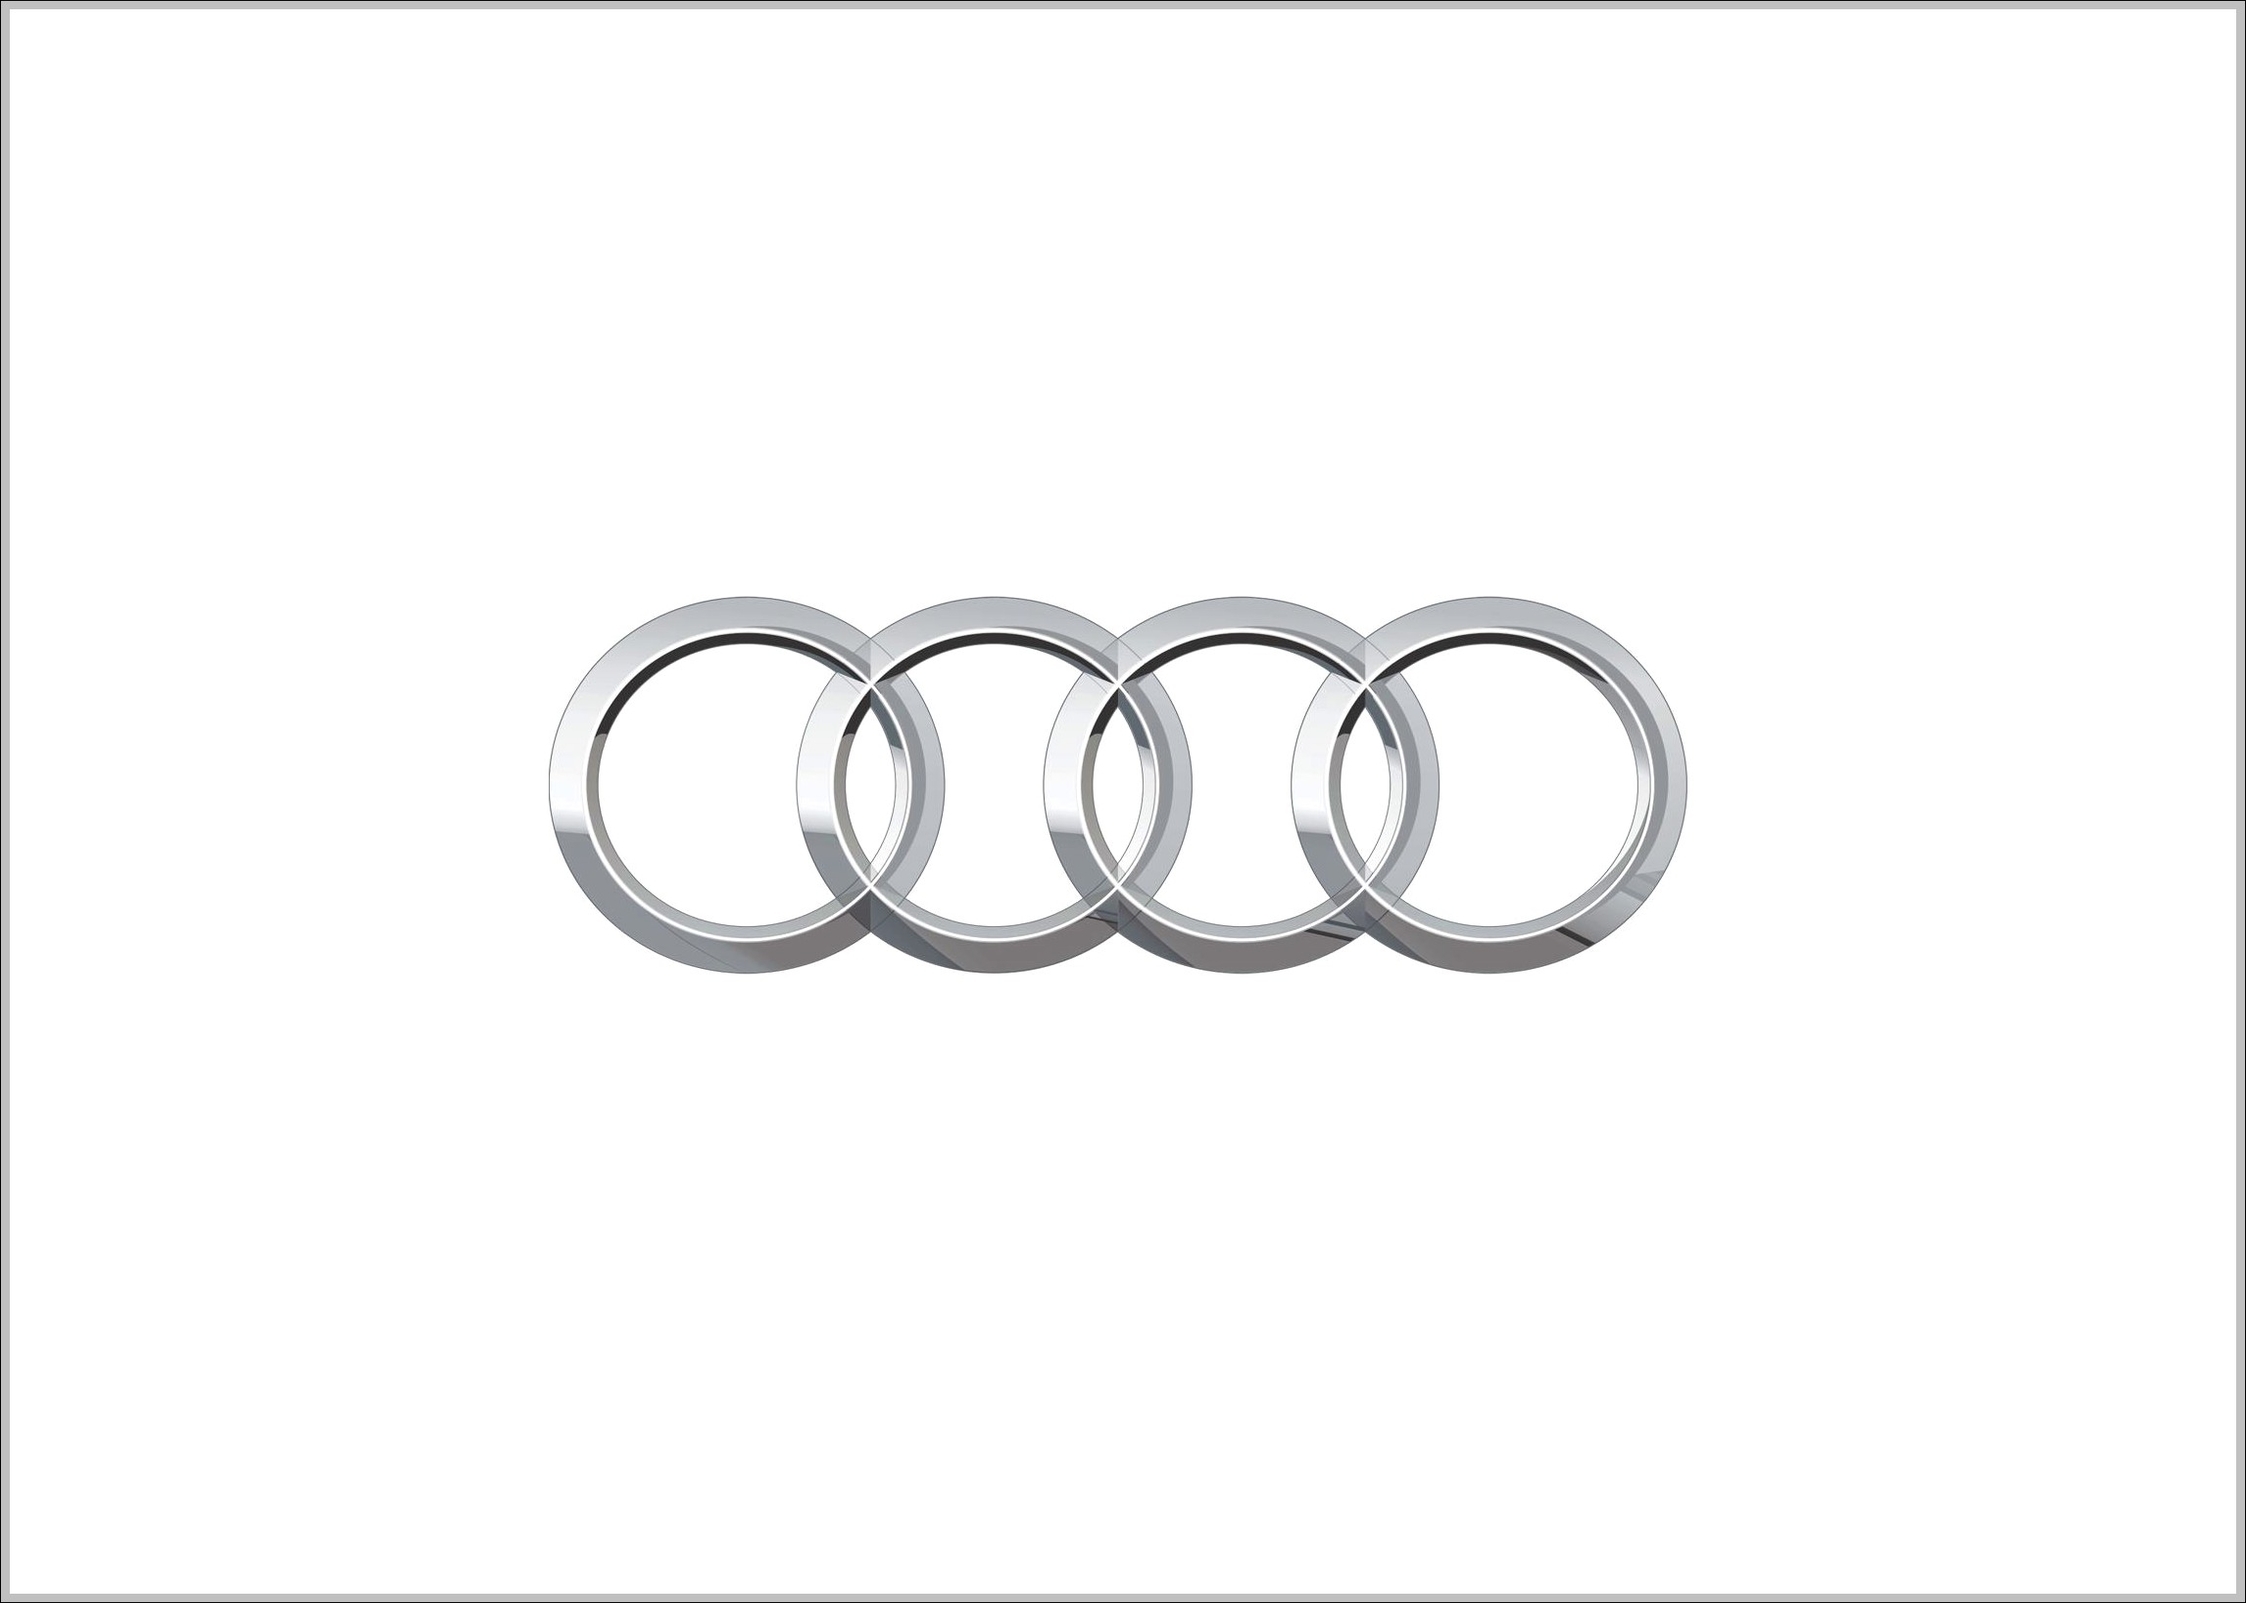 Audi logo 4ring